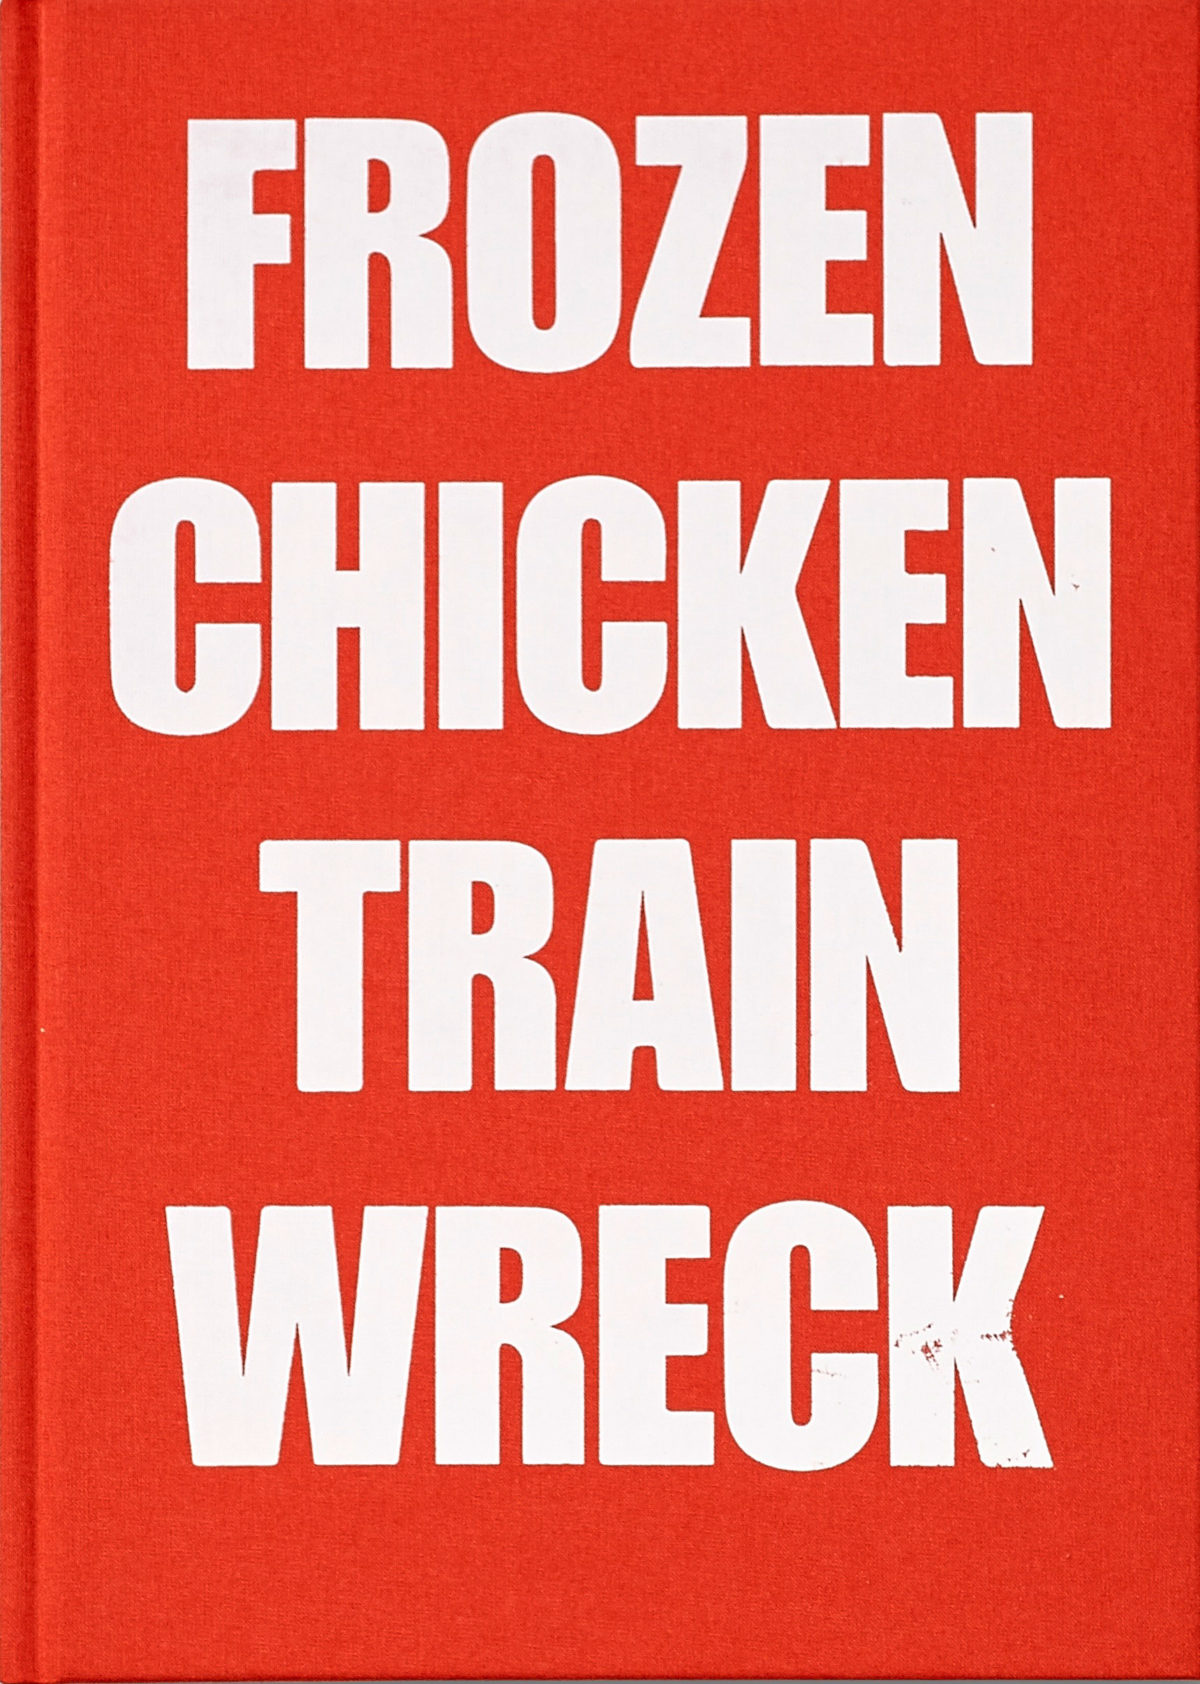 frozen-chicken-train-wreck